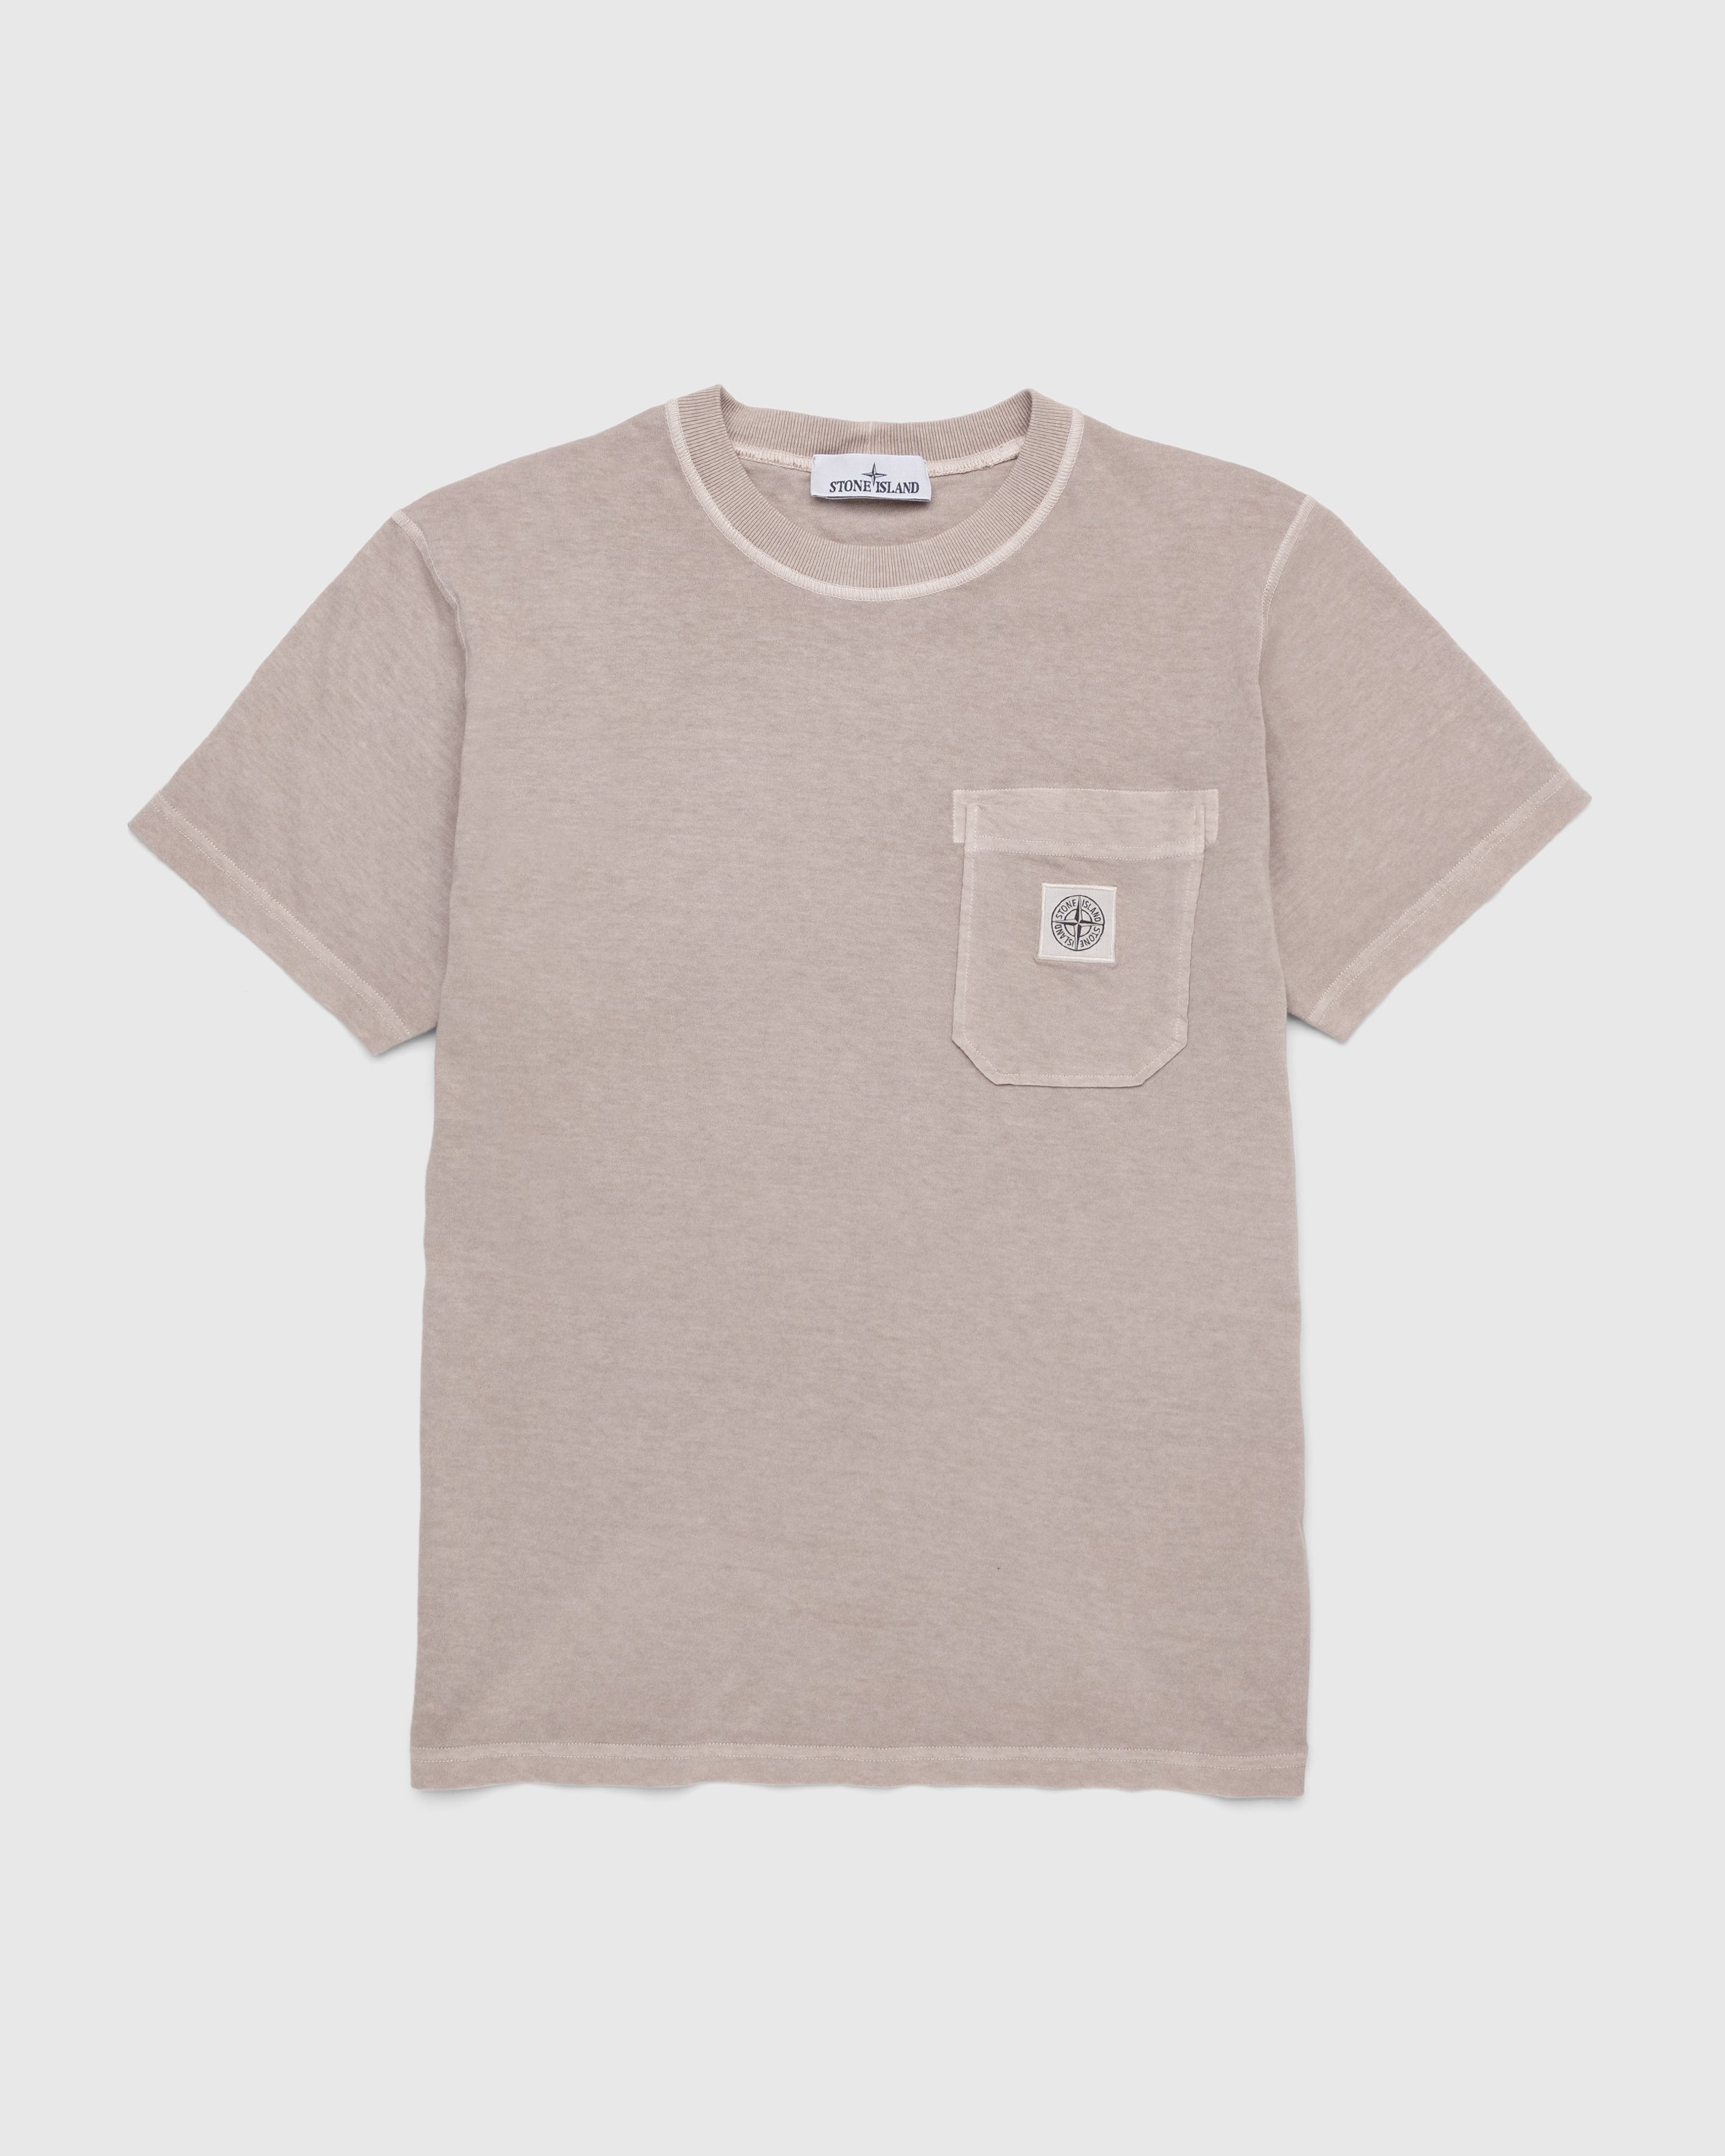 Stone Island - T-Shirt Grey 21957 - Clothing - Grey - Image 1